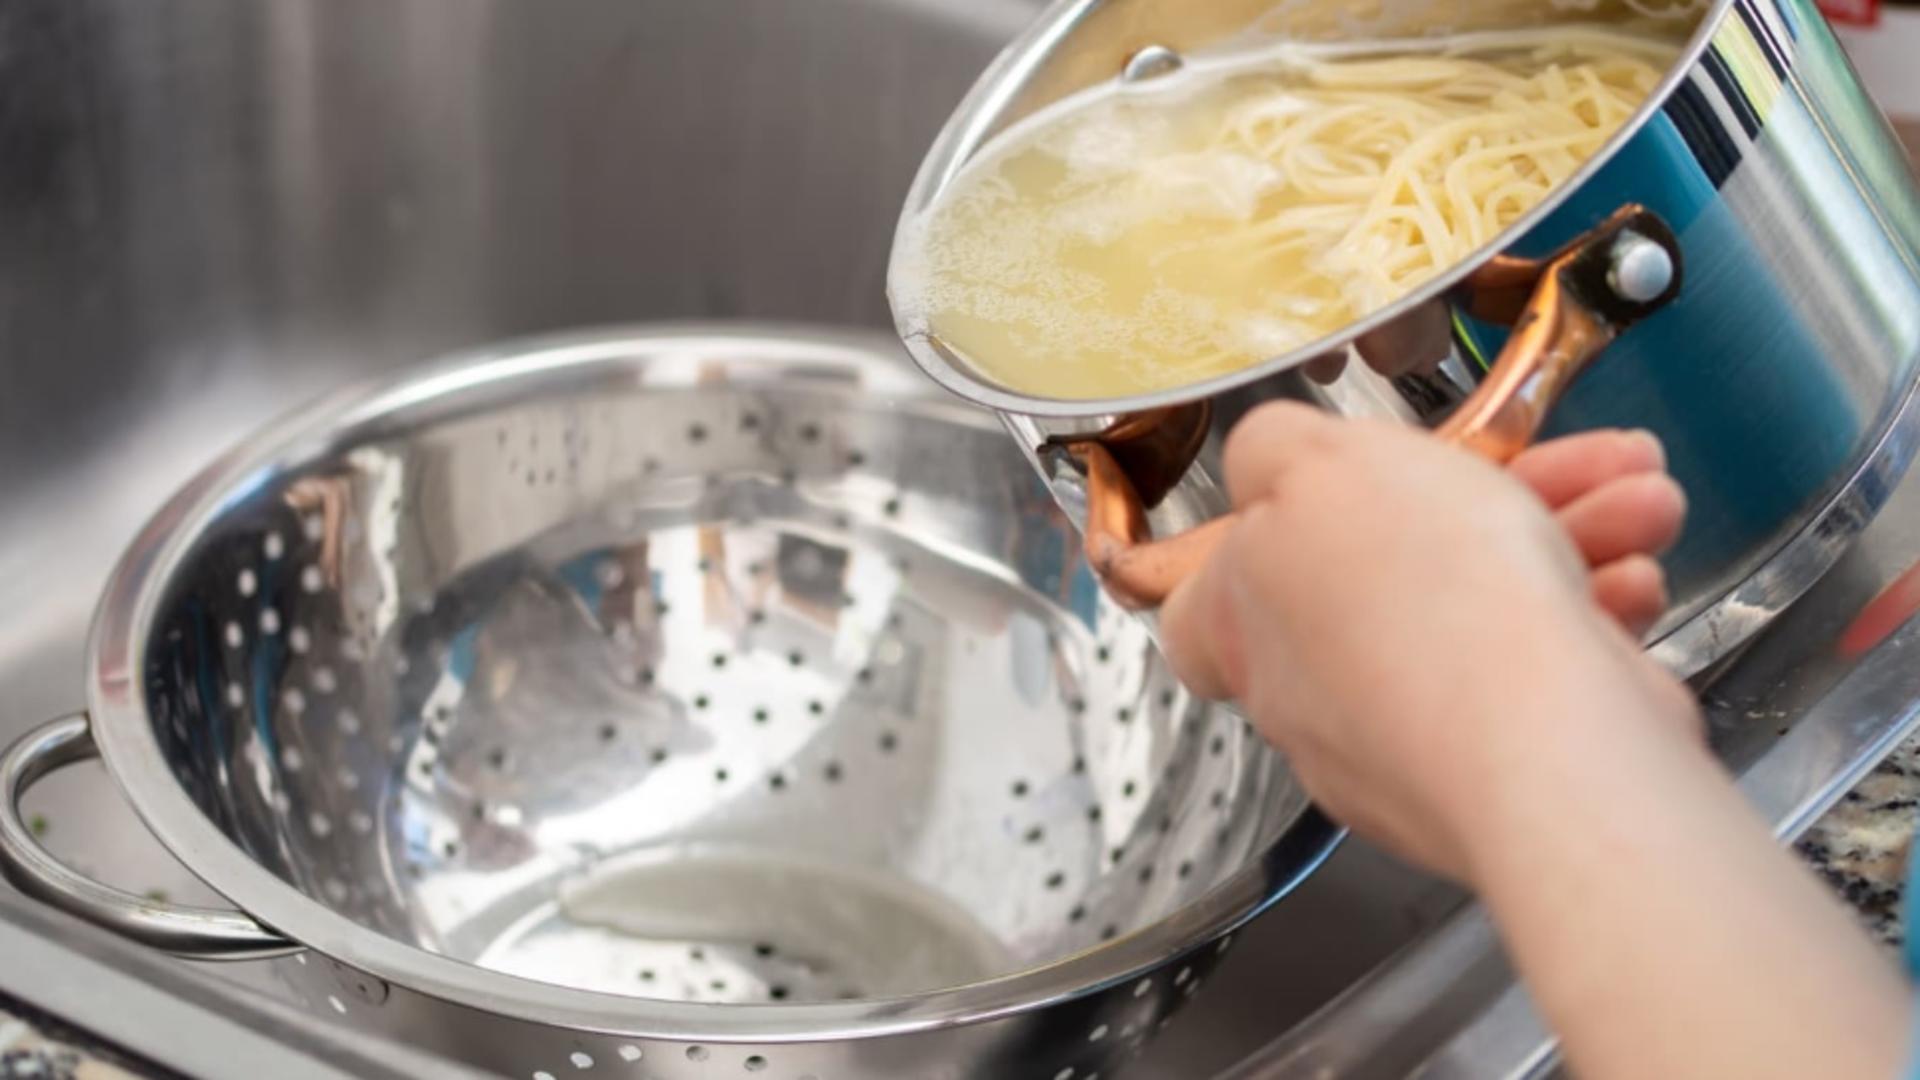 Ce se întamplă dacă arunci apa în care fierbi pastele în chiuvetă. Este cea mai mare greşeală!